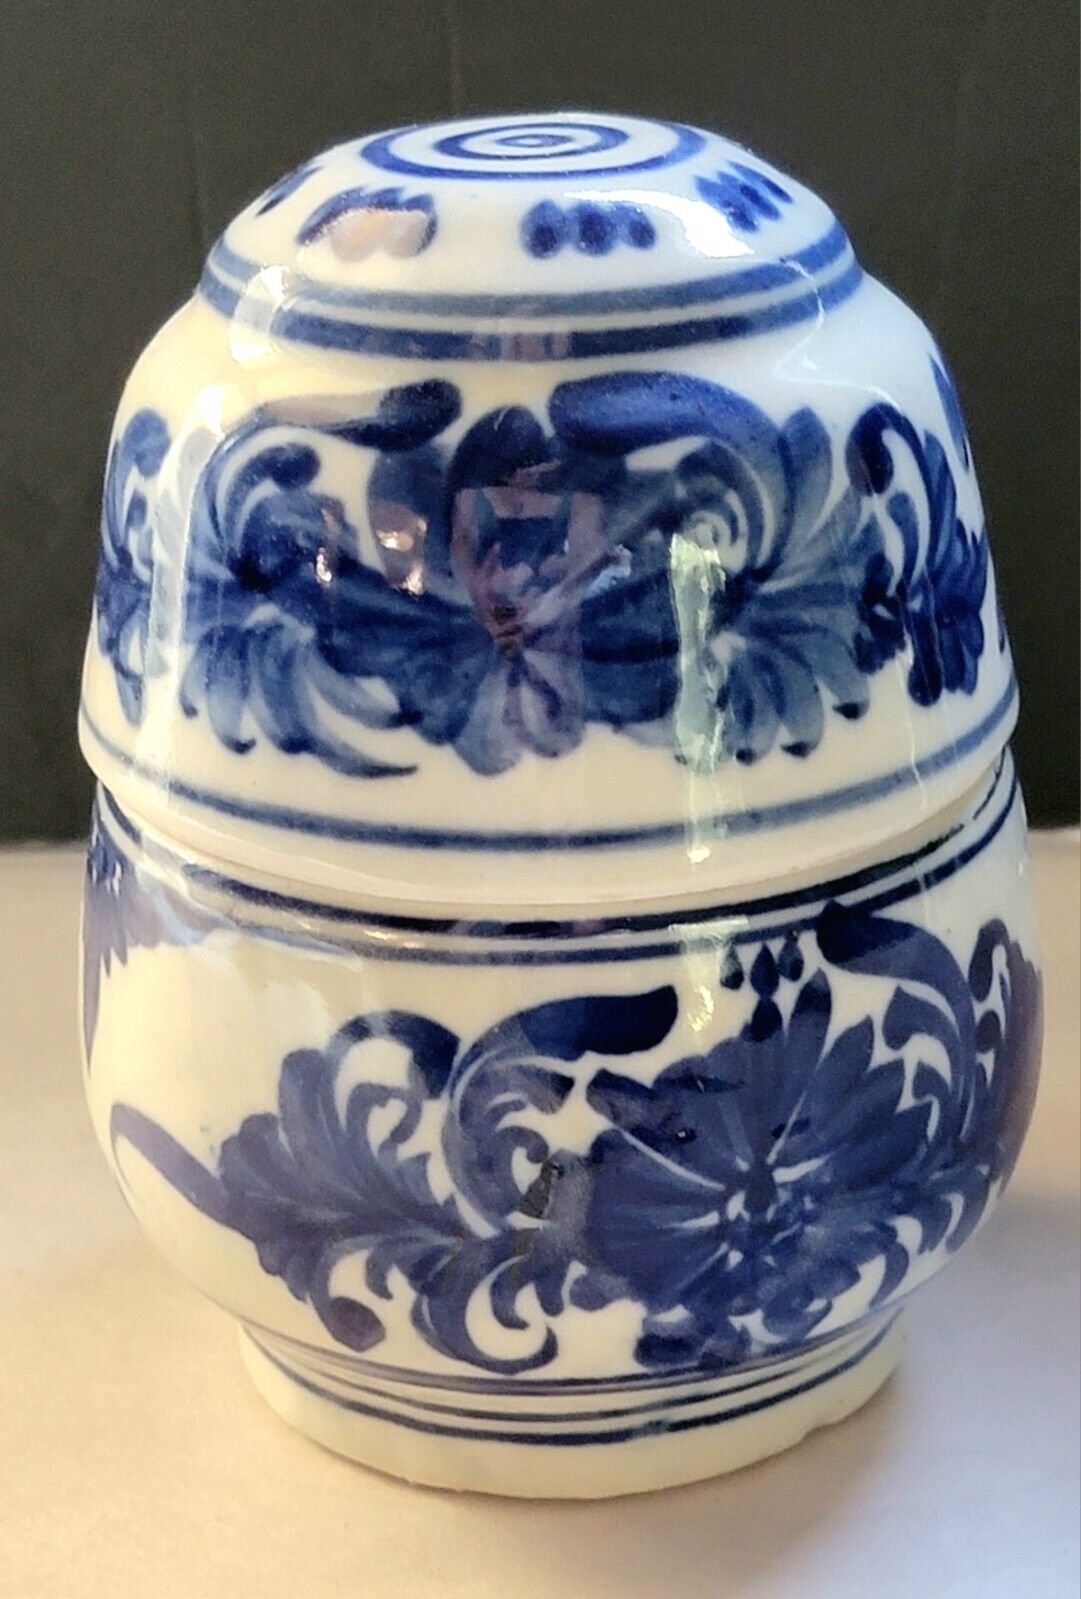 Vintage Chinese Porcelain Pottery Storage Jar/Caddy Blue Floral Design Glaze